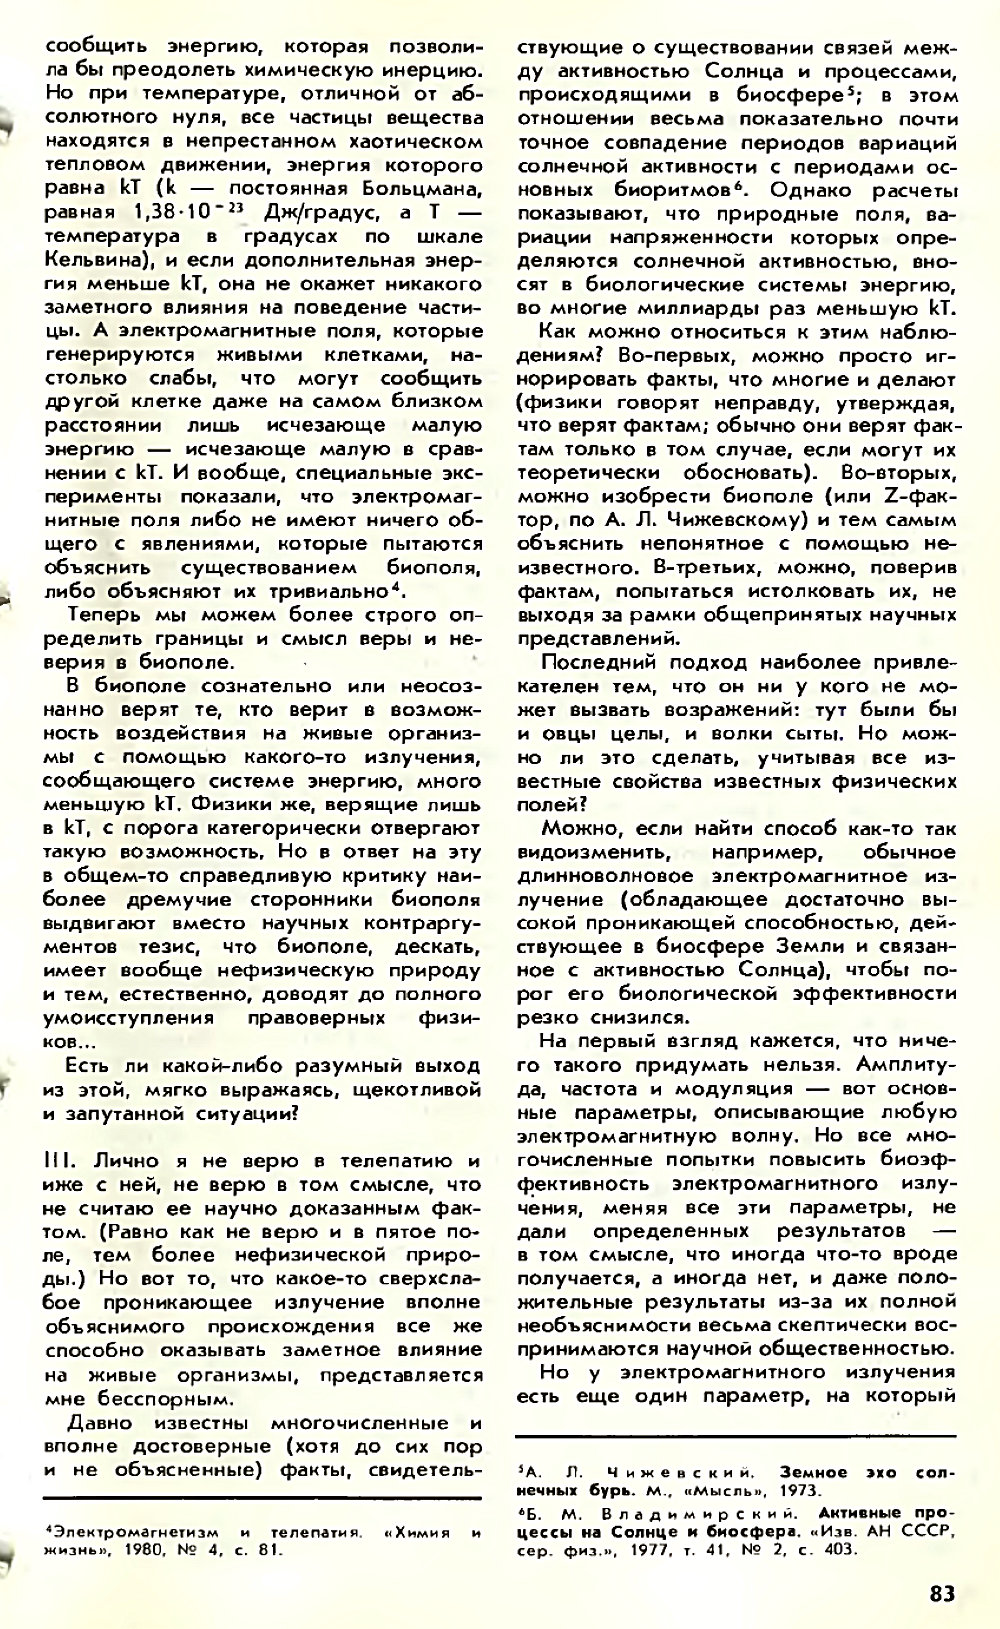 Асимметрия против хаоса, или что такое биополе. В. Жвирблис. Химия и жизнь, 1980, №12, с.81-87. Фотокопия №3